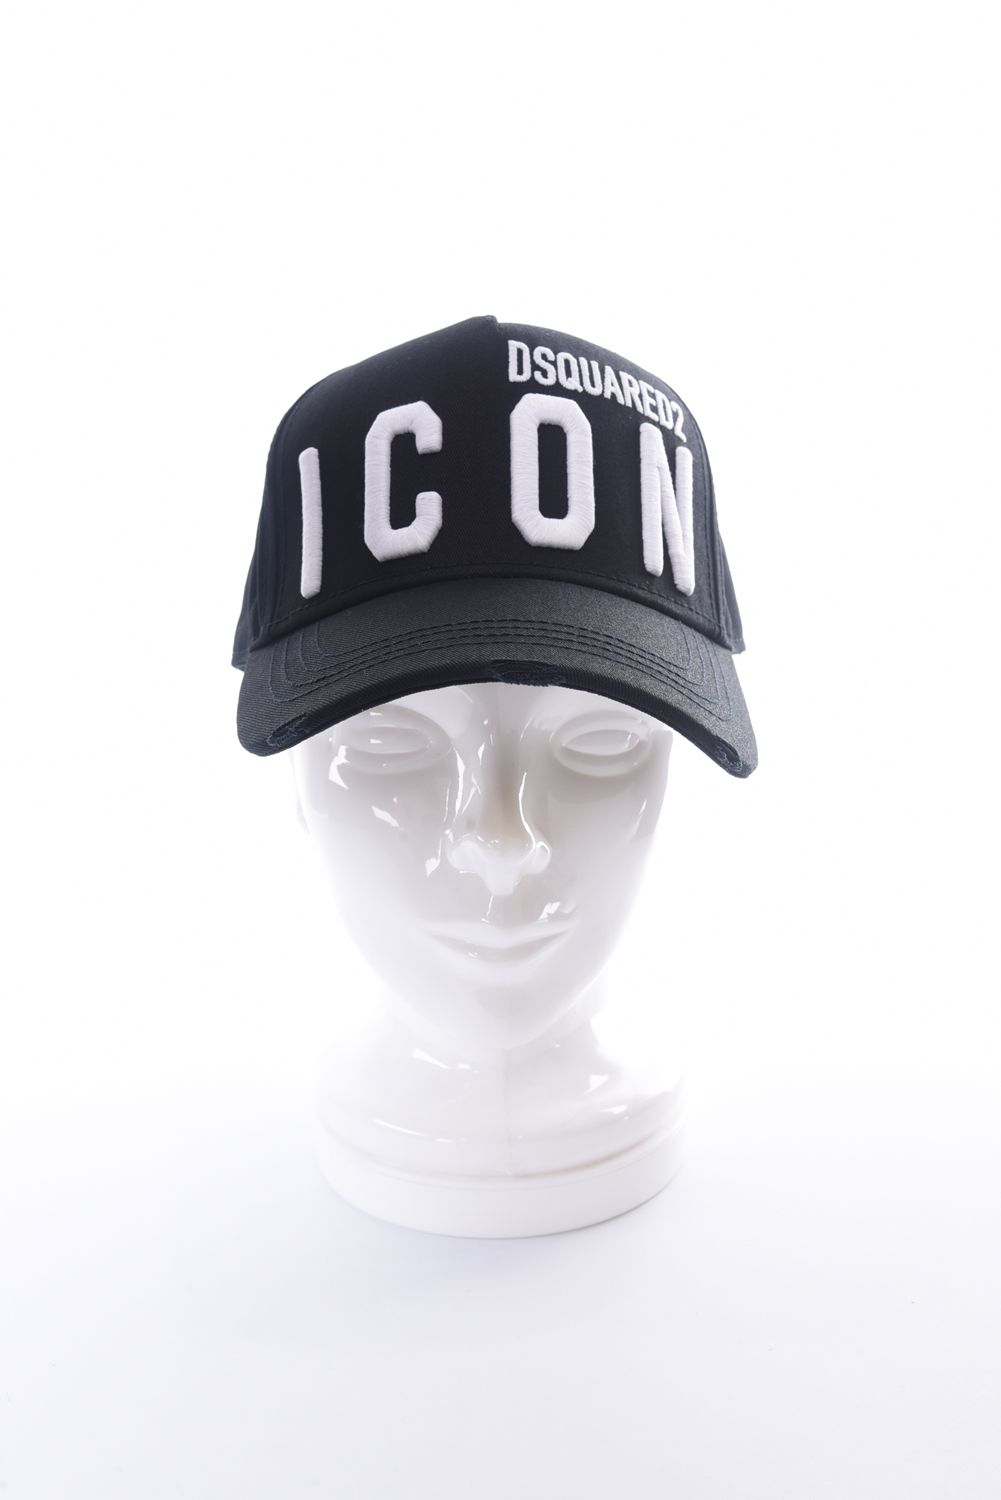 BASEBALL CAP / ICON ブランドロゴ 刺繍 ベースボール キャップ ブラック - FREE